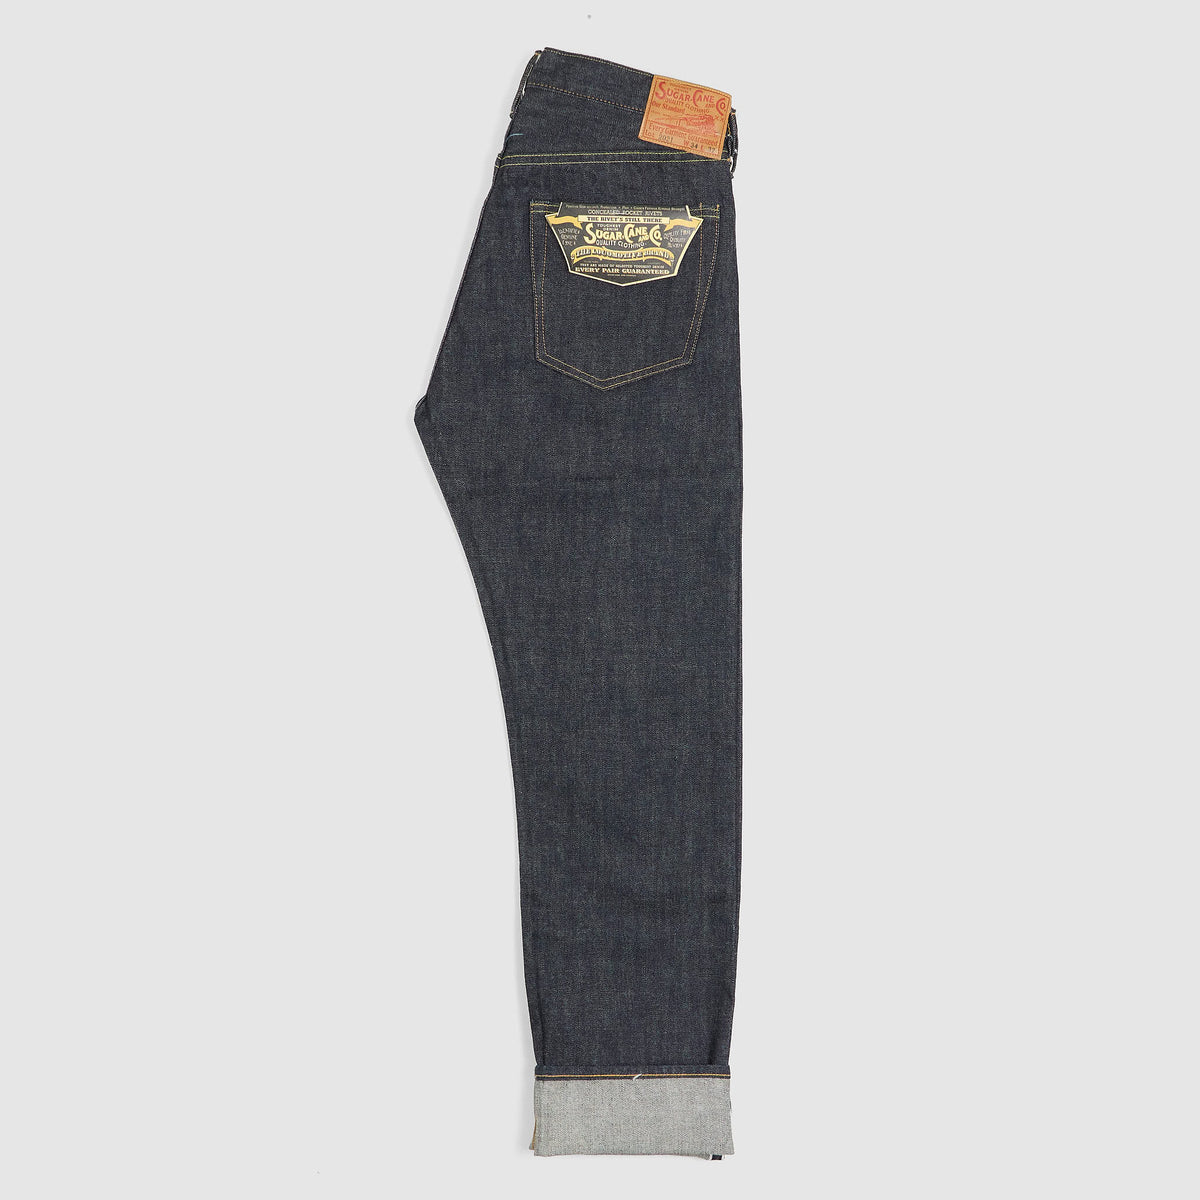 Sugar Cane Slim Tapered Model 2021 14,25 oz. Five Pocket Denim Jeans